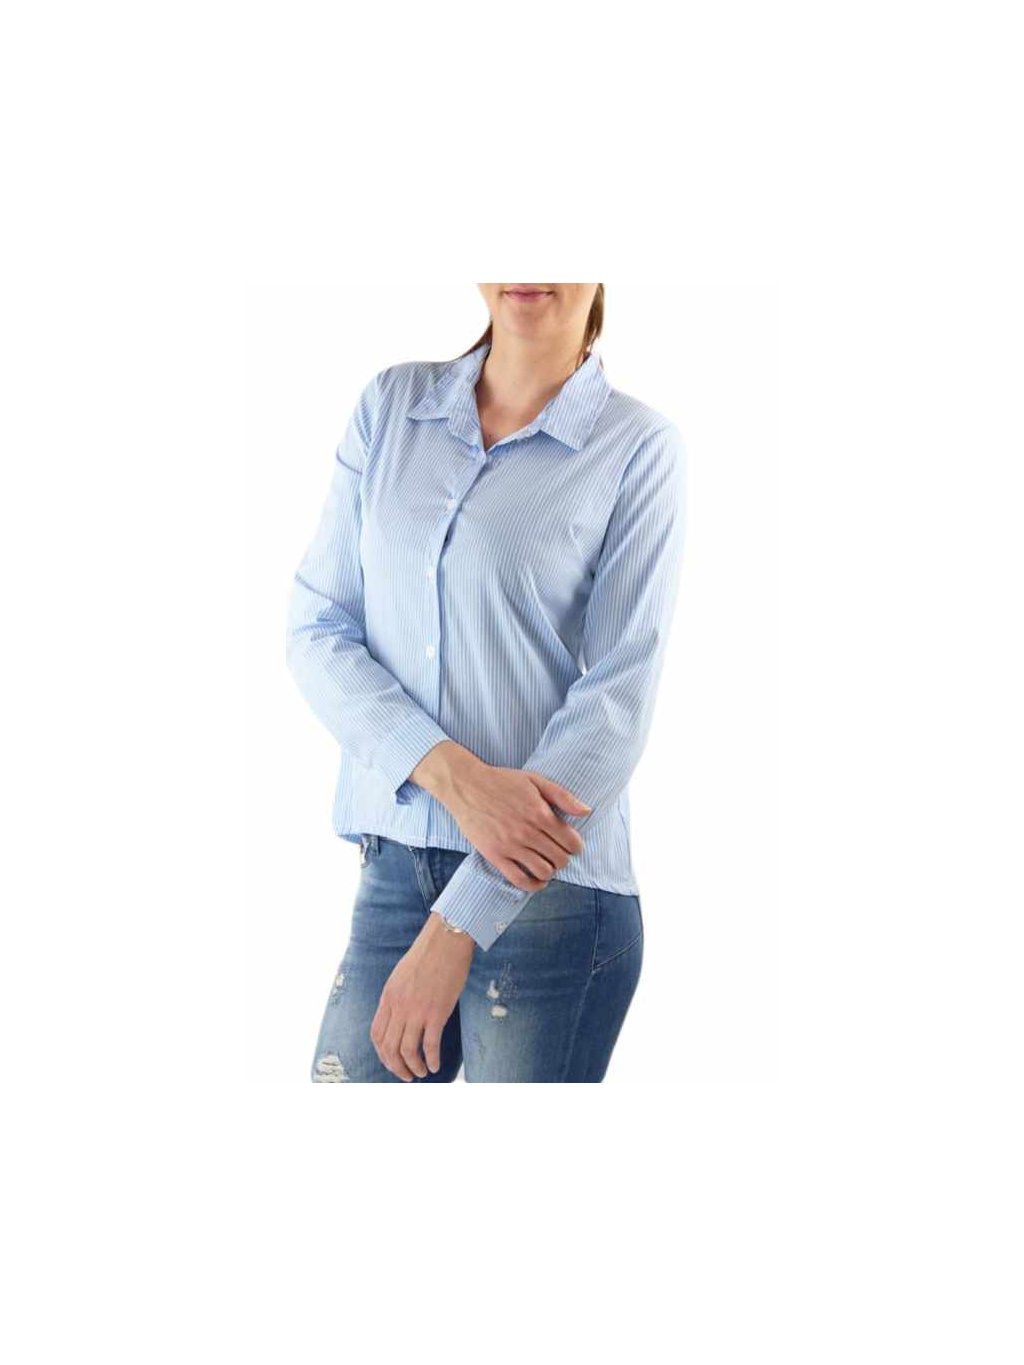 Dámská košile s dlouhým rukávem pruh modrá (Velikost XL)